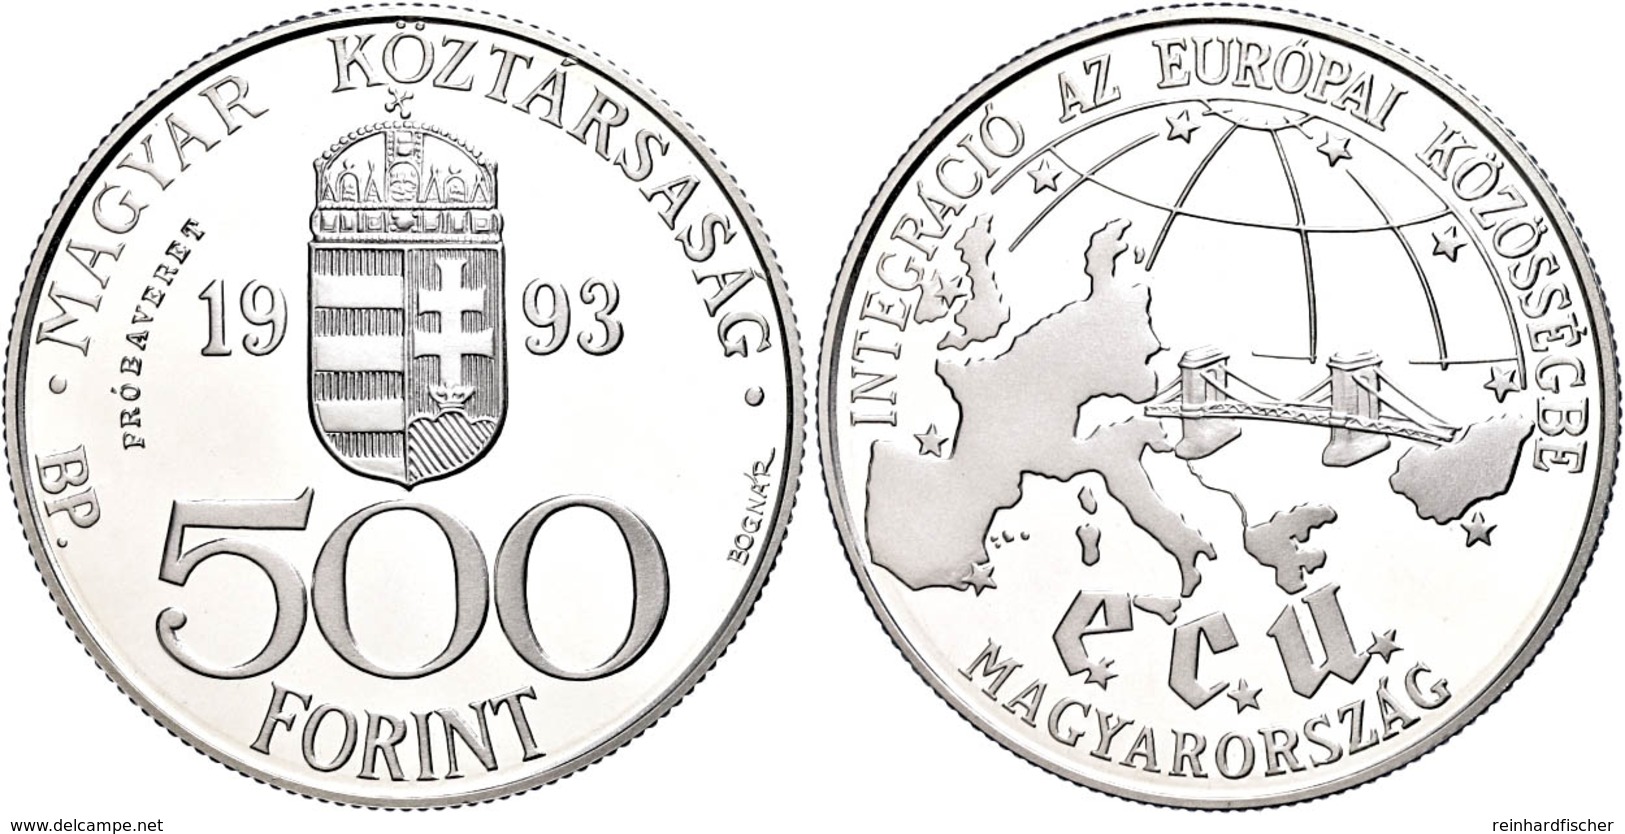 500 Forint, Silber, 1993, Probe, EU, Vgl. KM 704, In Kapsel, PP.  PP - Ungheria